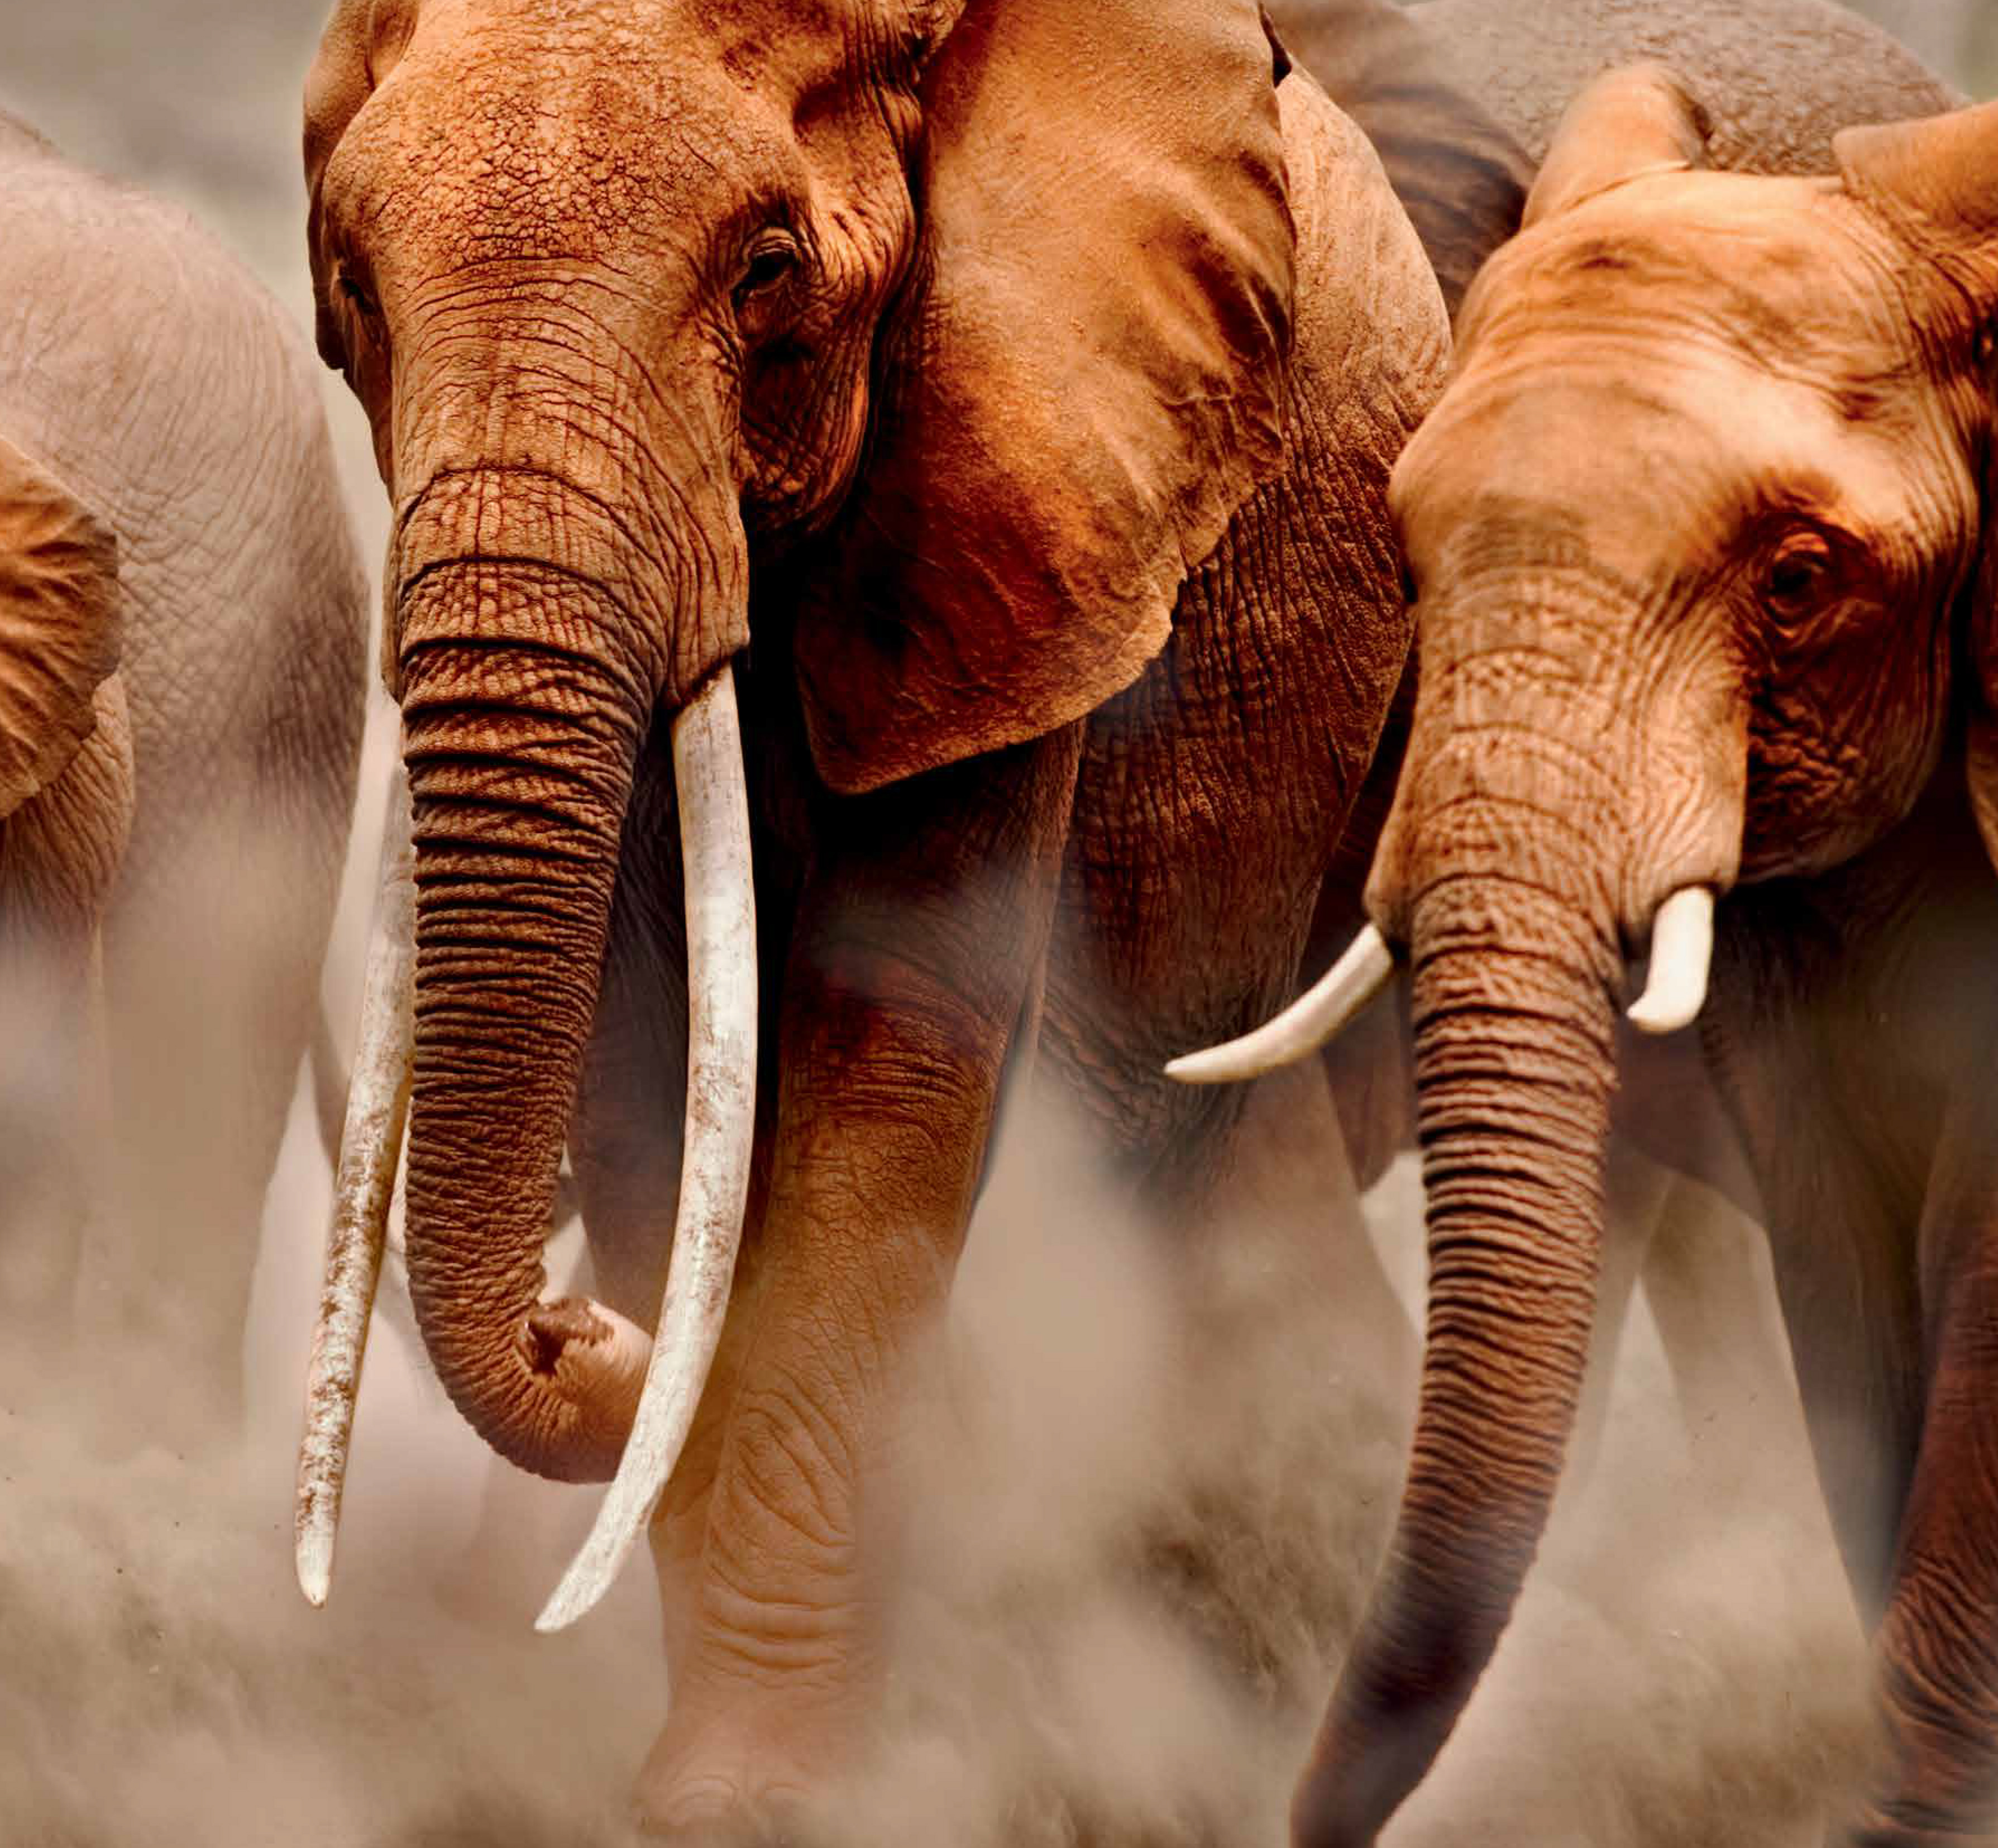 Слоны нежные гиганты. Слон Инстаграм. Слон на Шарп. Африка Инстаграм. Cow elephant